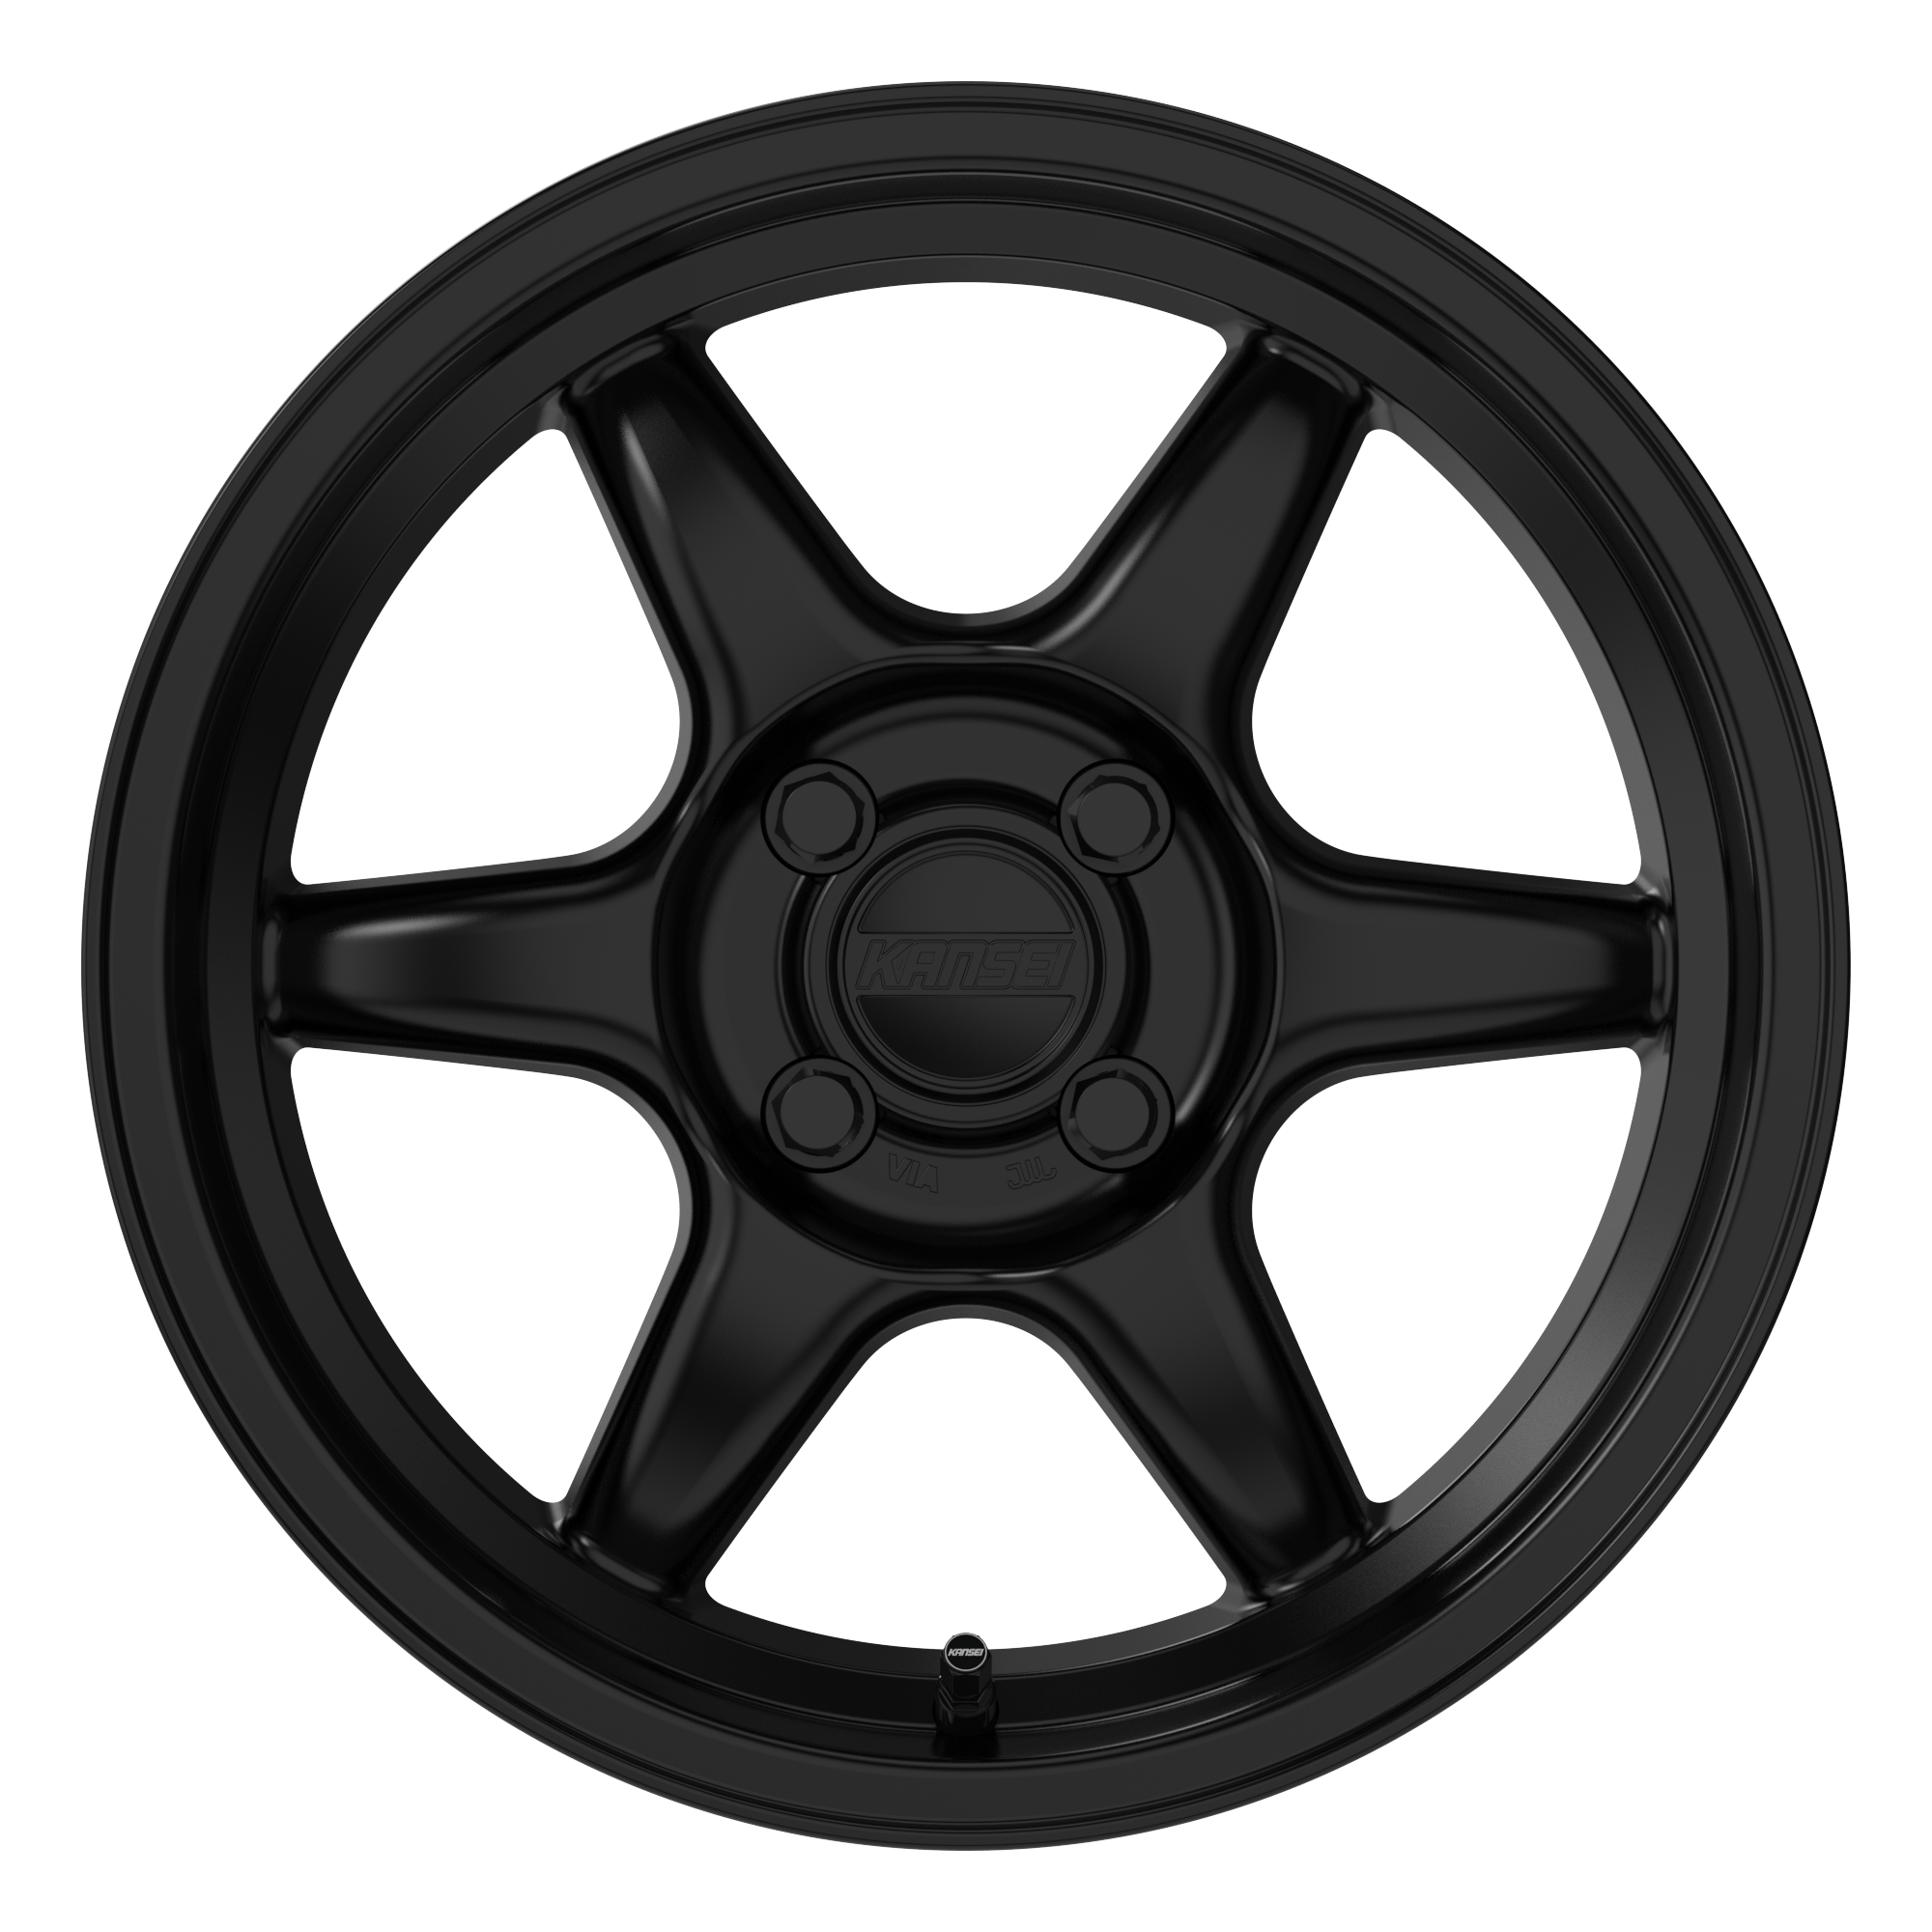 Kansei - Tandem Wheel - 15x7 +25mm - 4x100 - Satin Black - NextGen Tuning